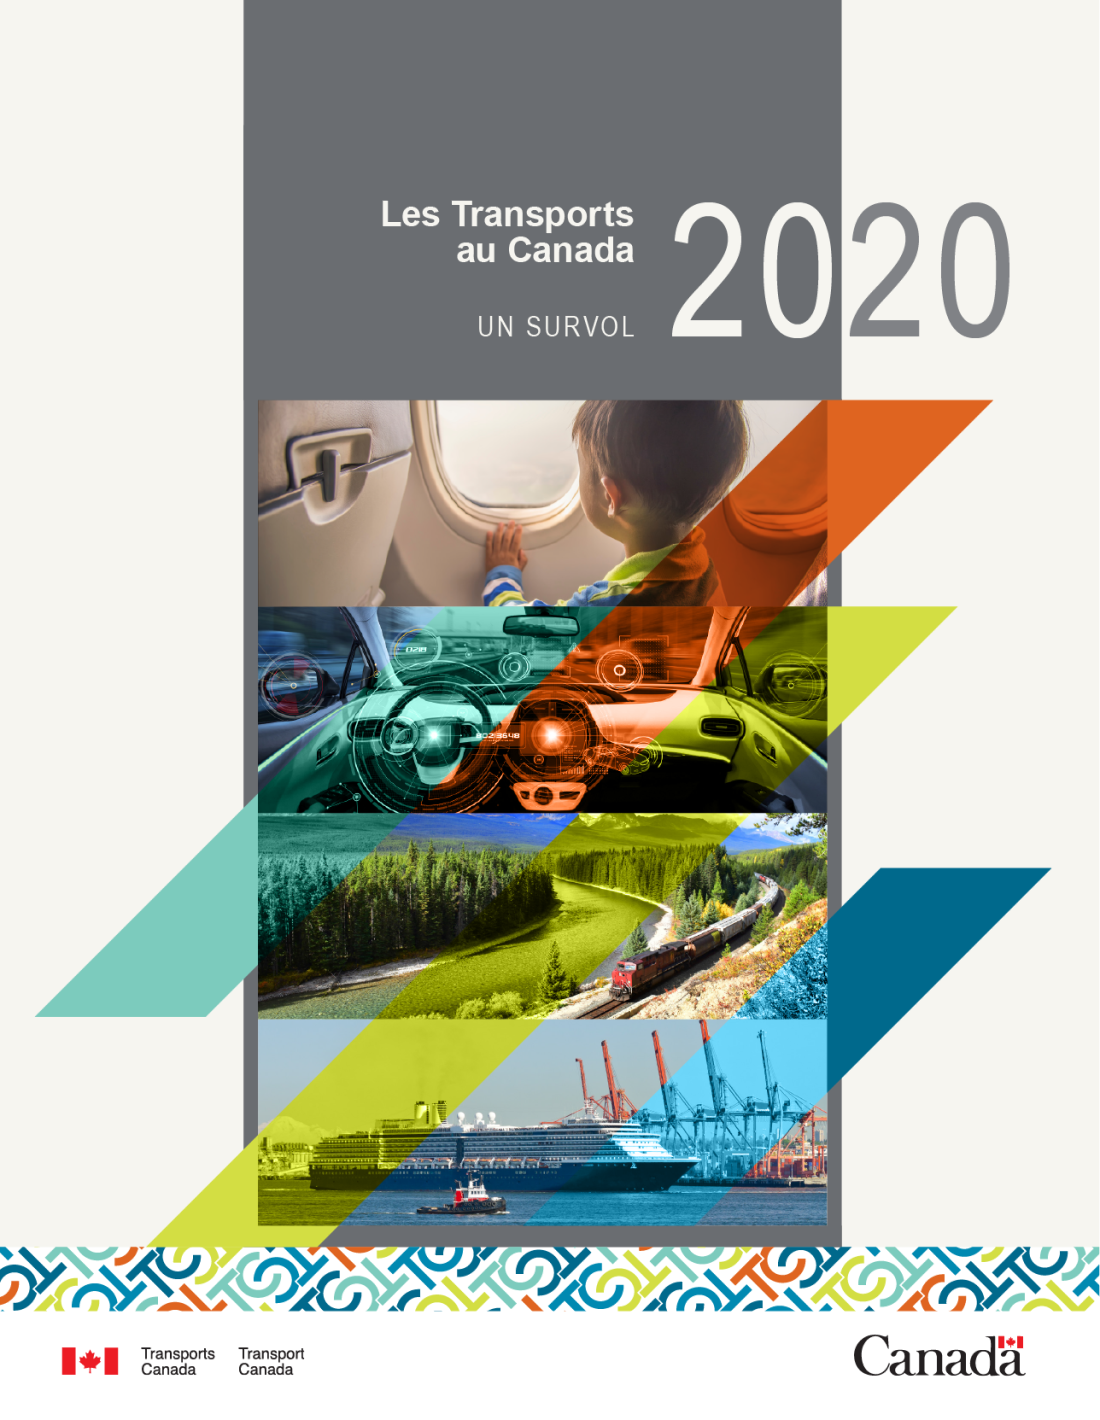 Image - Les Transports au Canada 2020 - un survol 